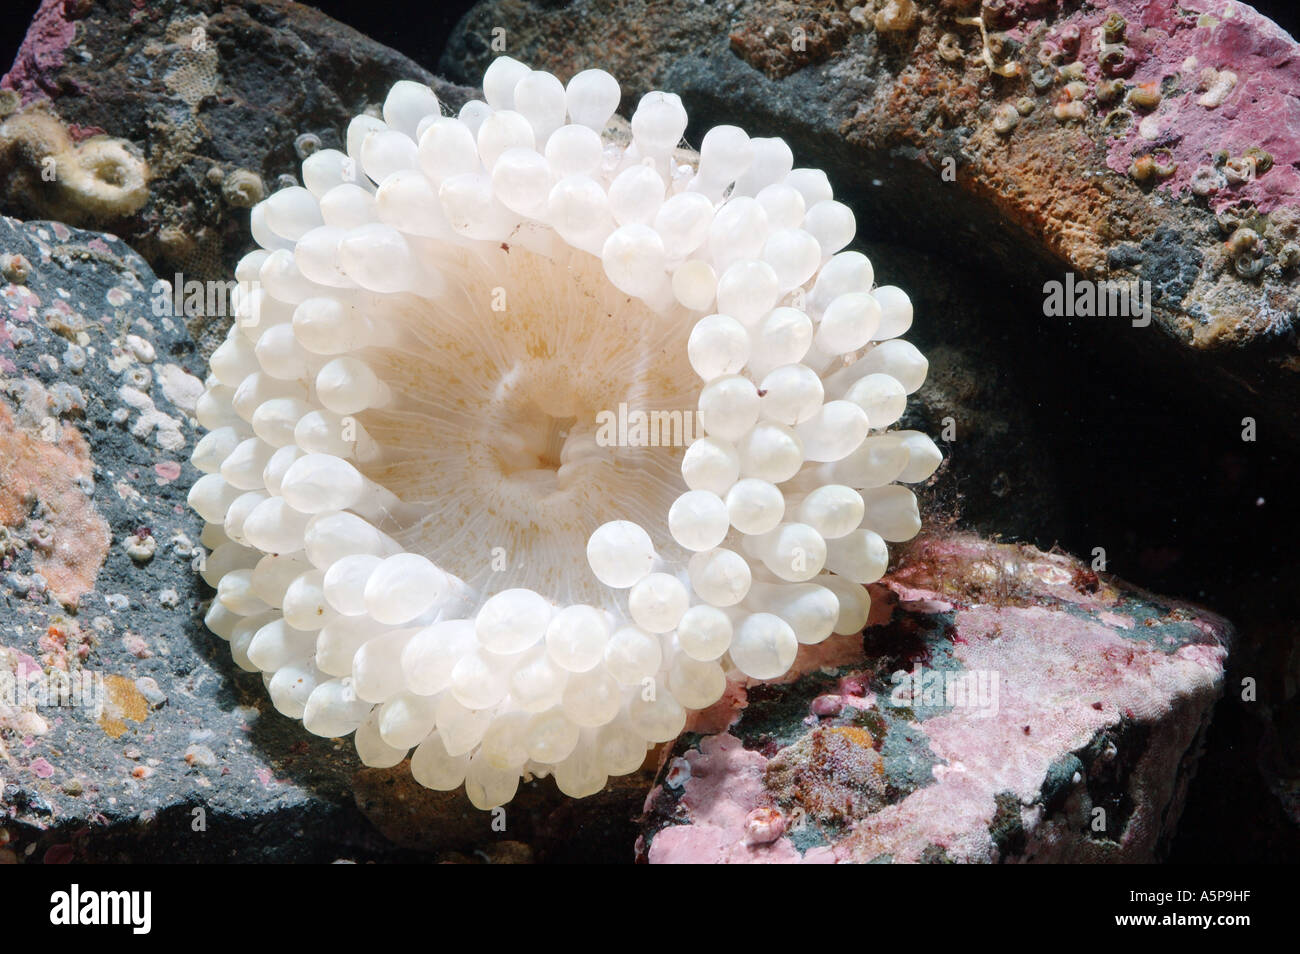 Weiße Form neuer Arten von North Pacific Sea Anemone Cribrinopsis Actiniaria Leben zwischen den Steinen Disk stumpfe Tentakeln Stockfoto